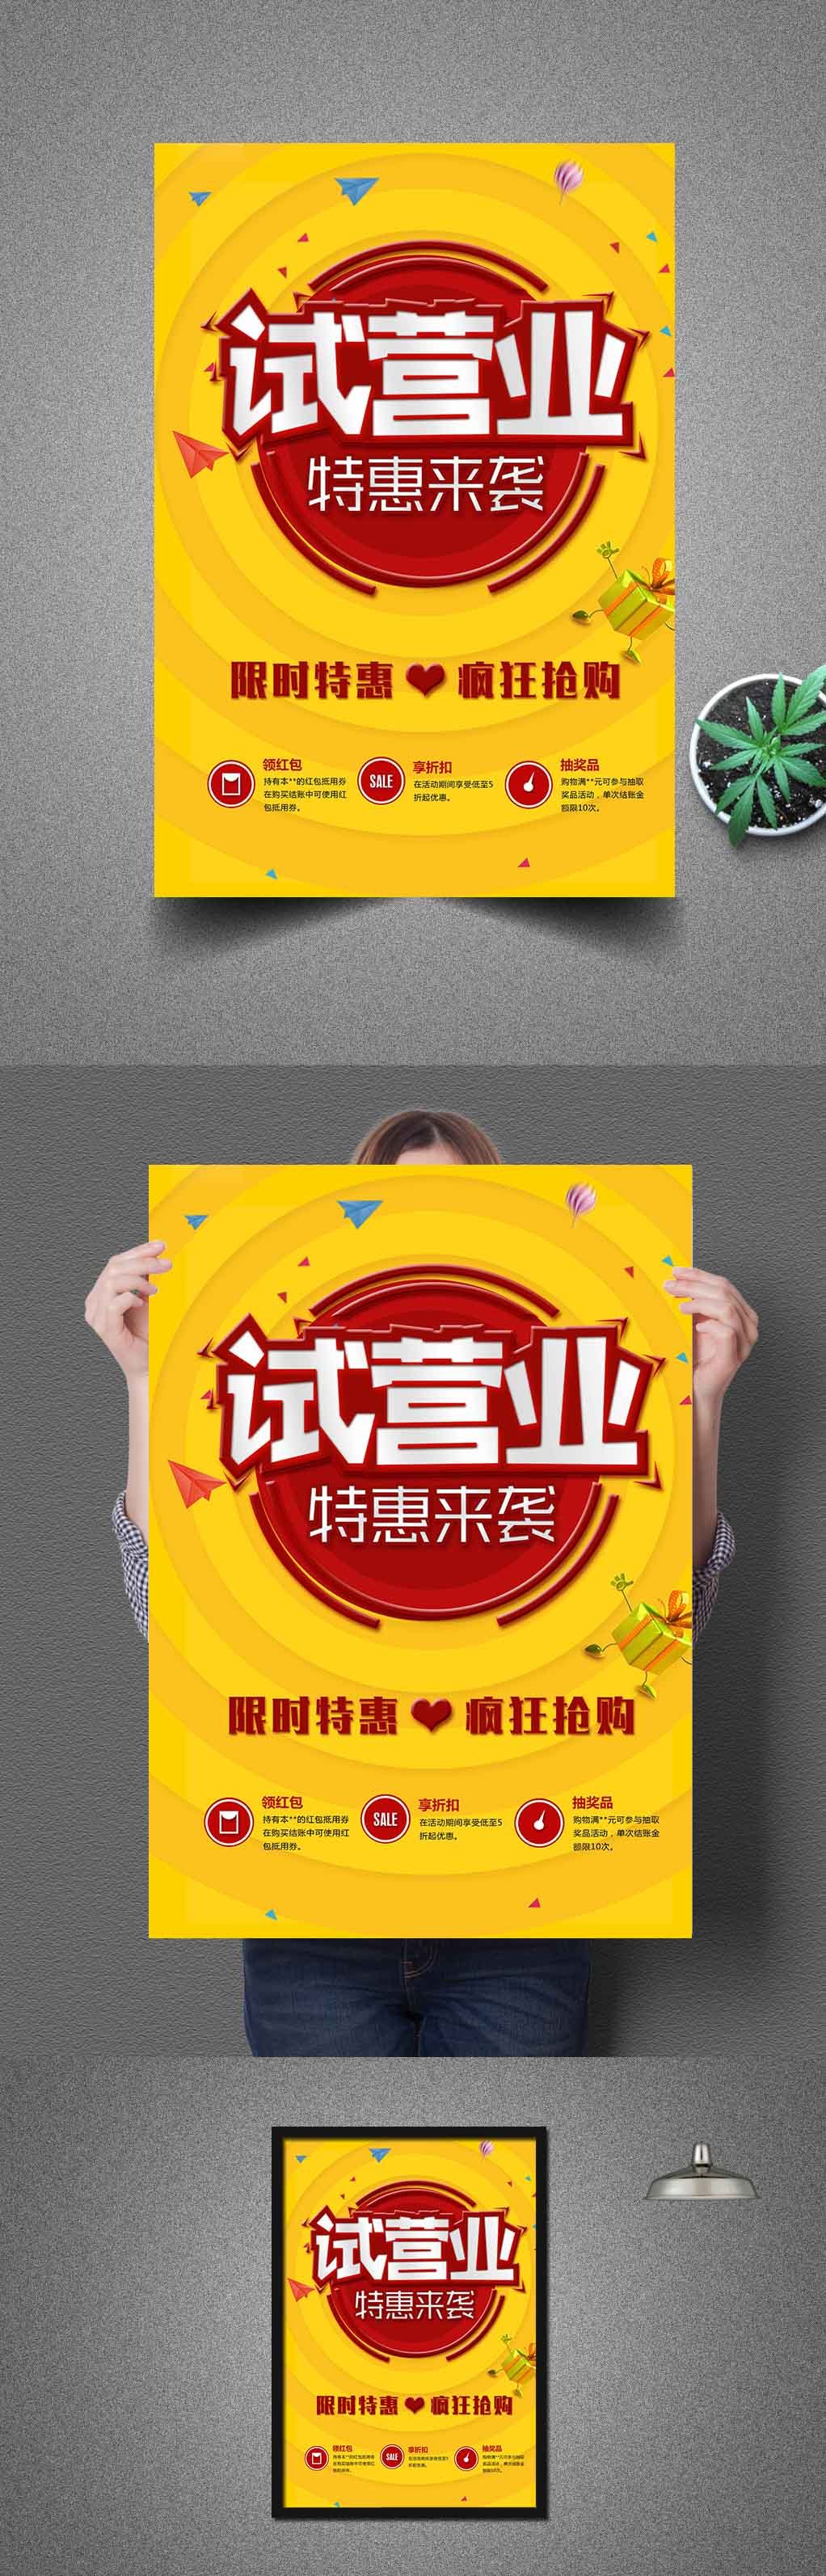 黄色超市盛大开业试营业宣传海报